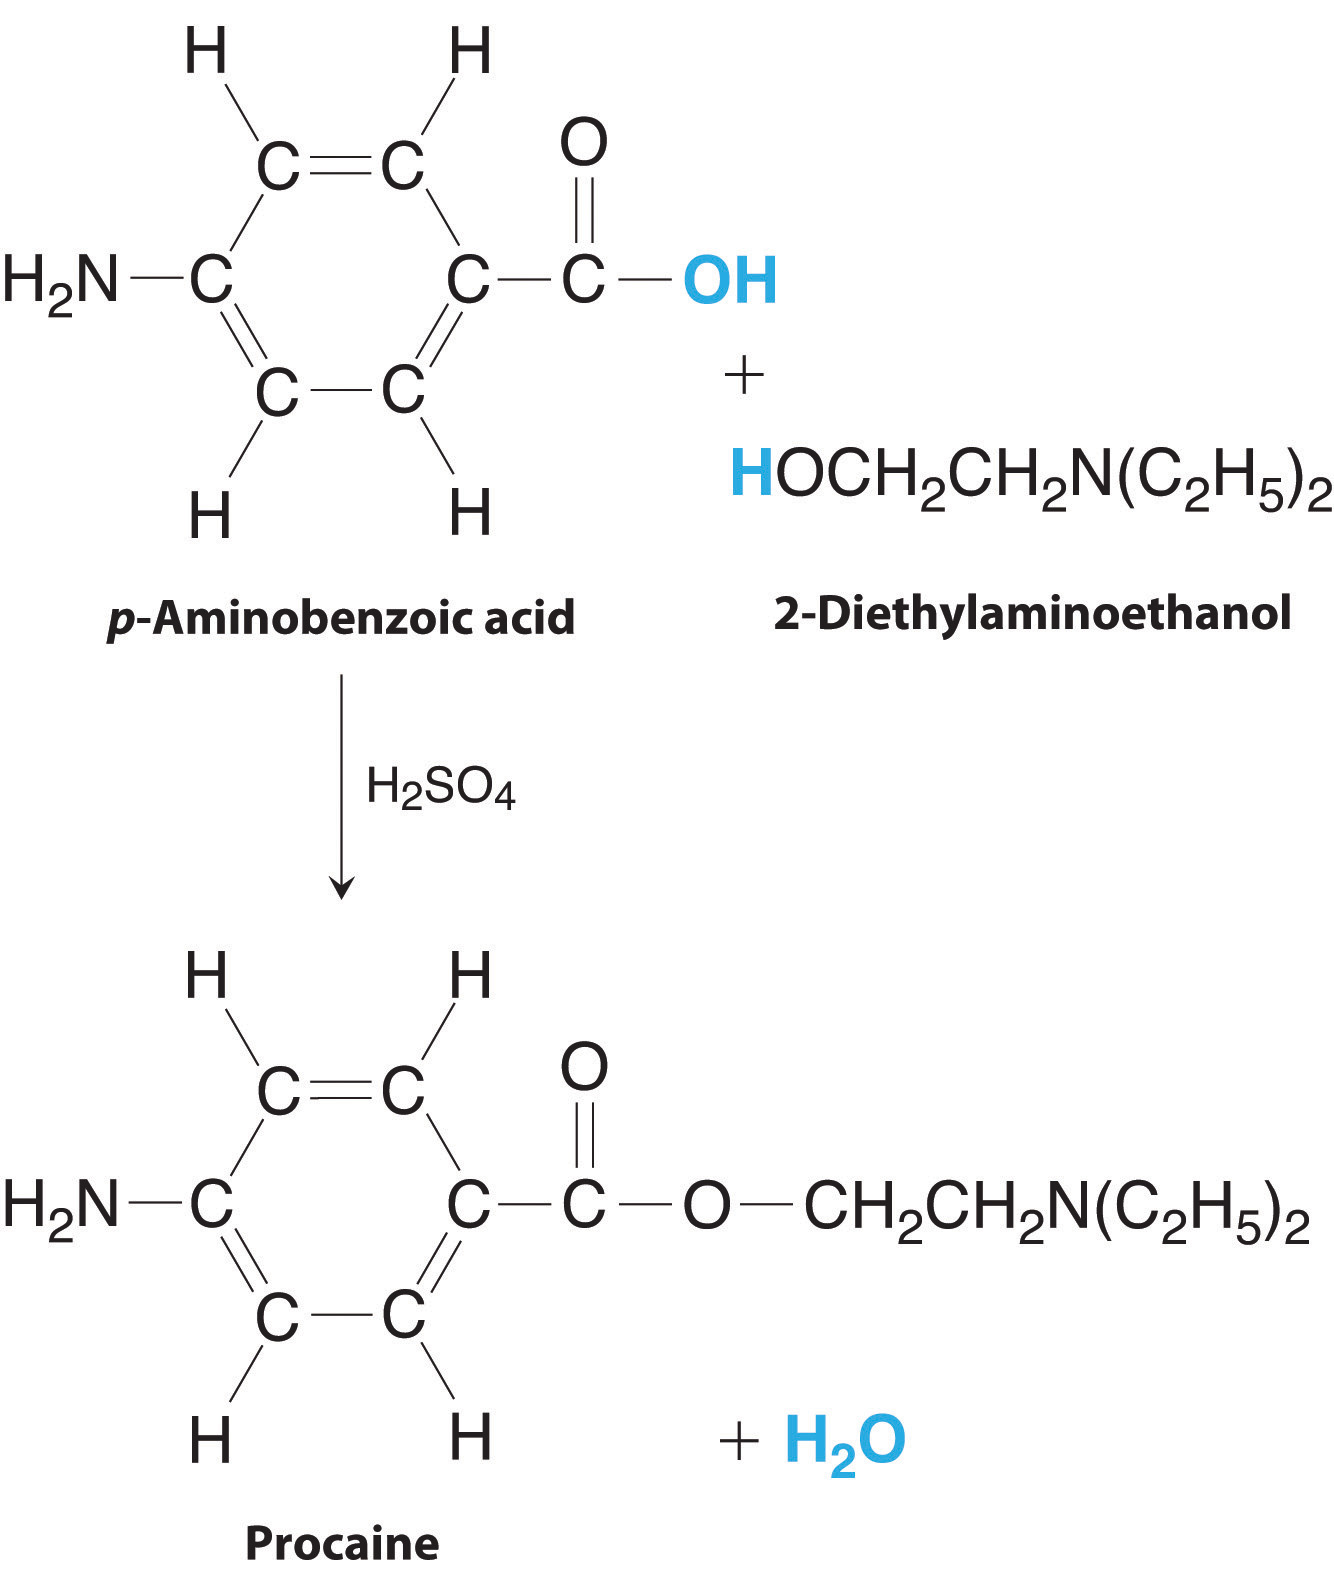 El ácido p-aminobencoico y el 2-dietilaminoetanol reaccionan con ácido sulfúrico para formar procaína y agua.